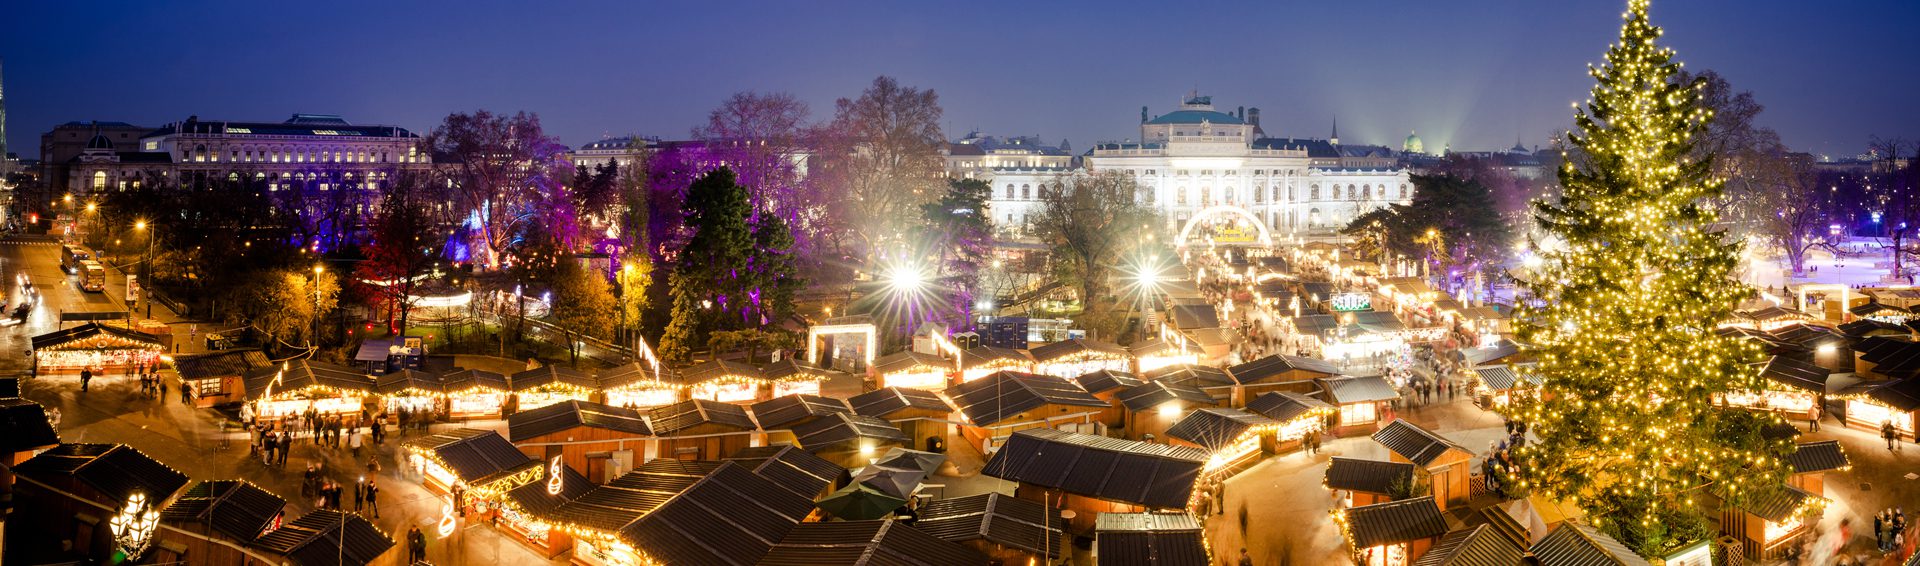 Impressive Christmas Markets: Vienna to Munich